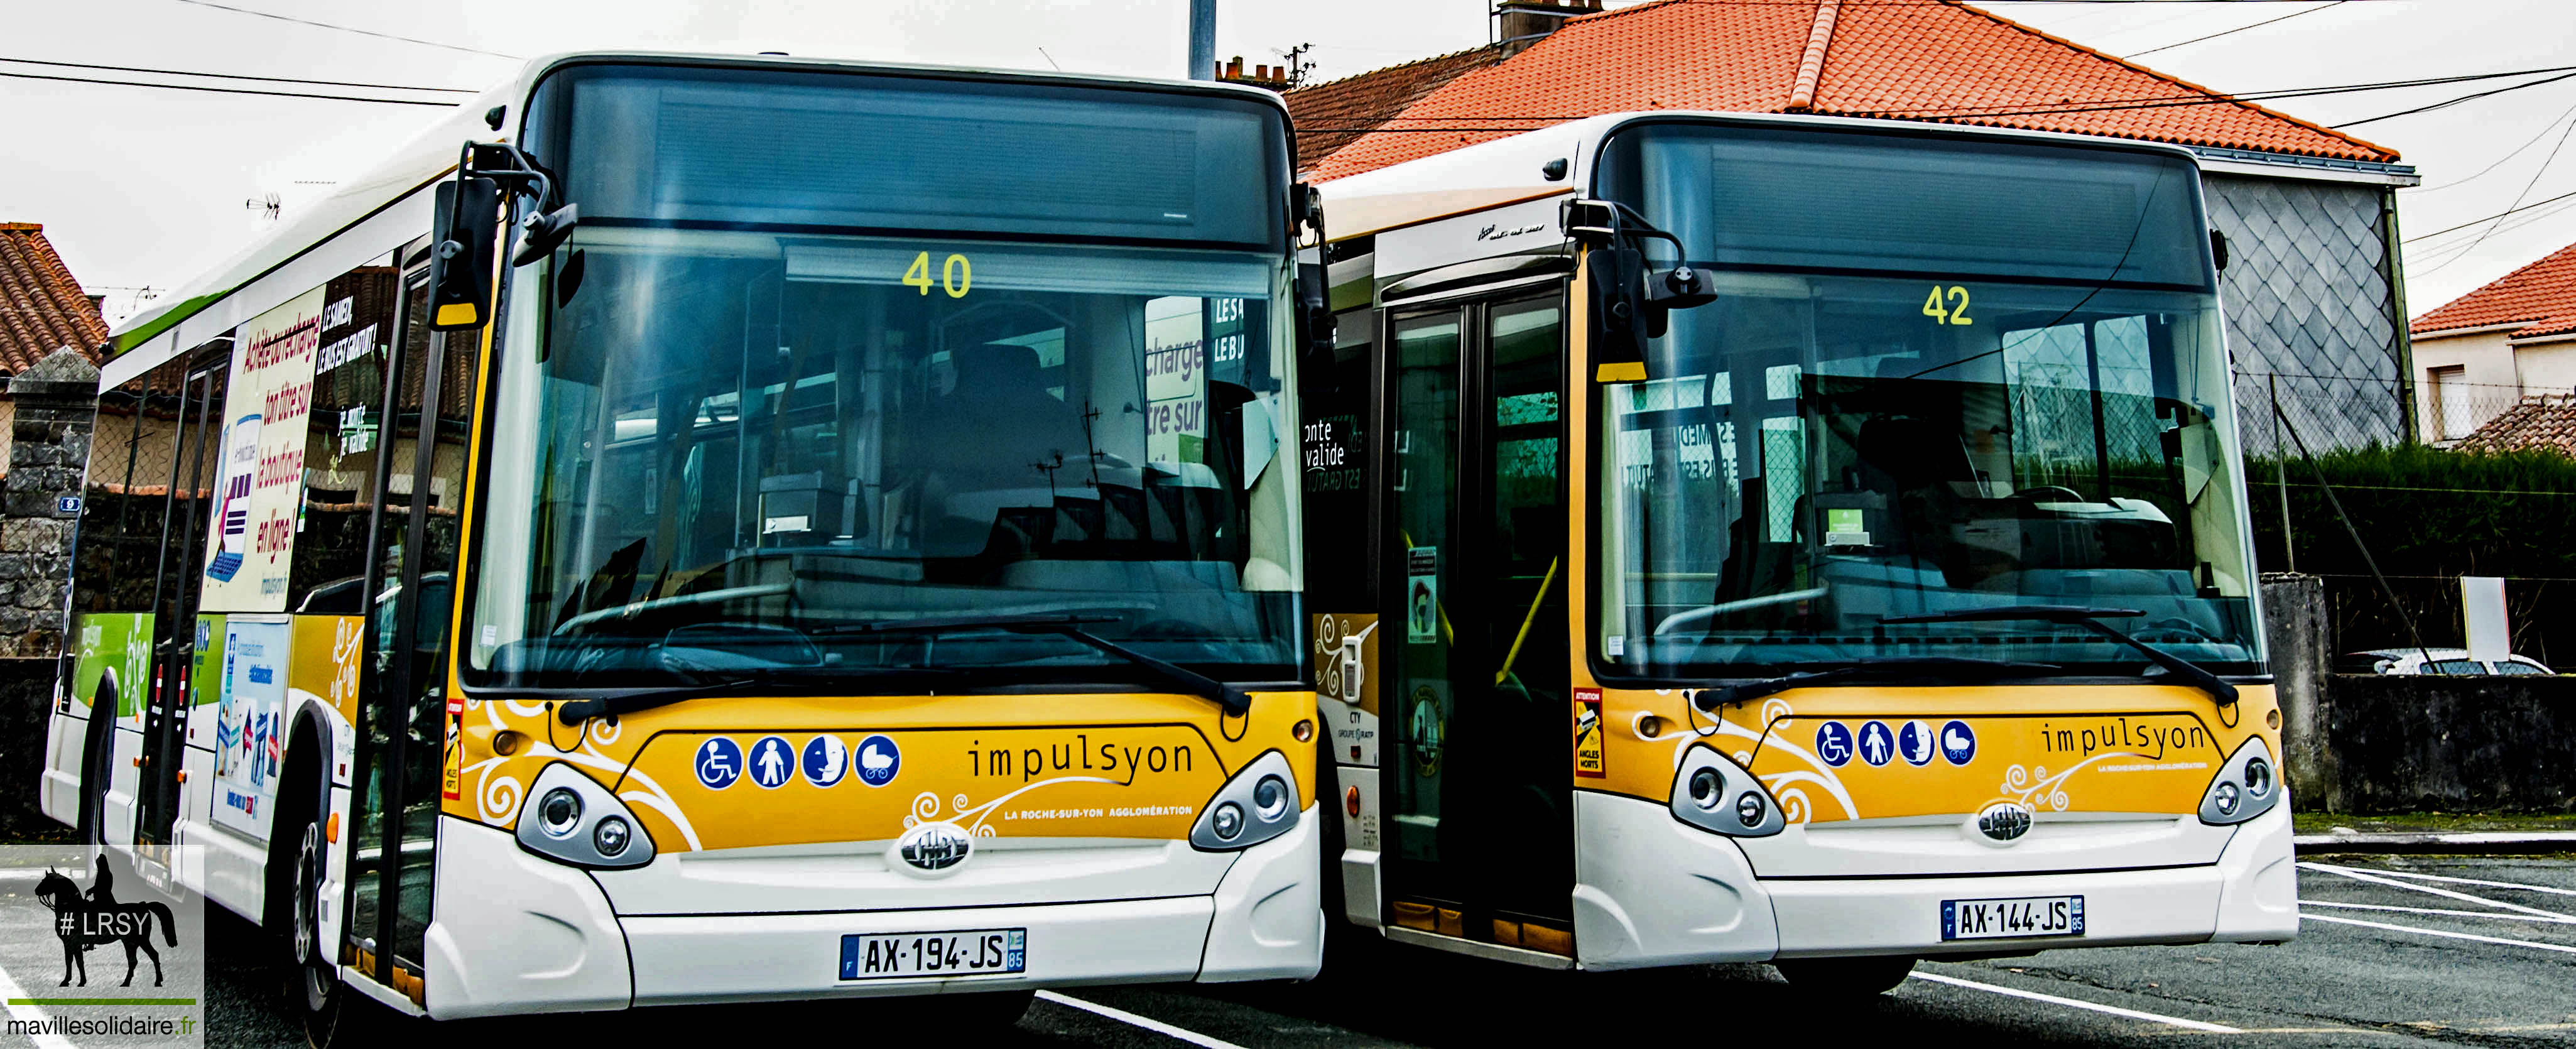 Bus impulsyon La Roche sur Yon